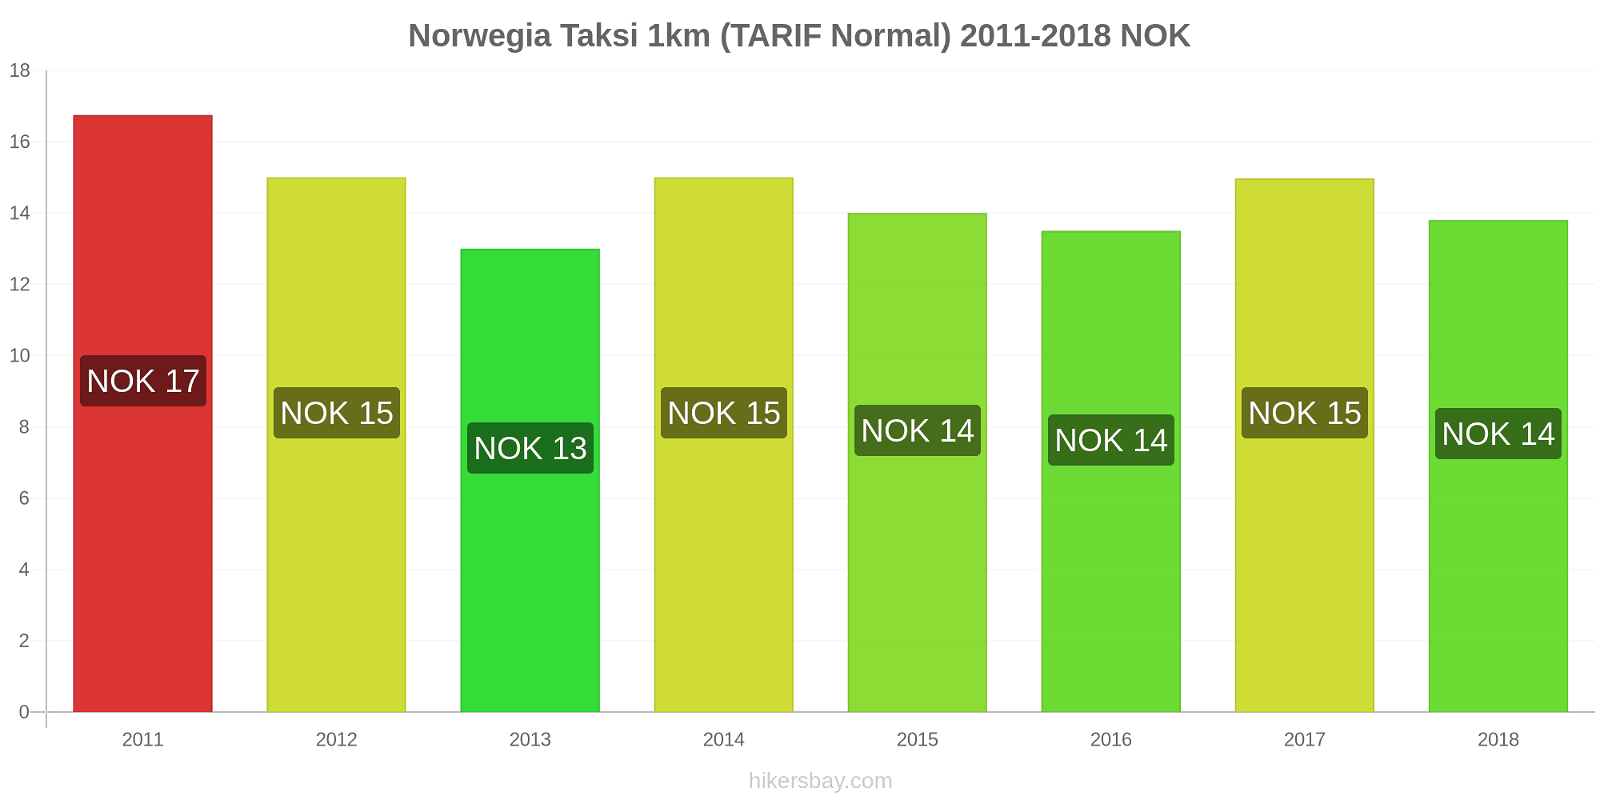 Norwegia perubahan harga Taksi 1km (Tarif Normal) hikersbay.com